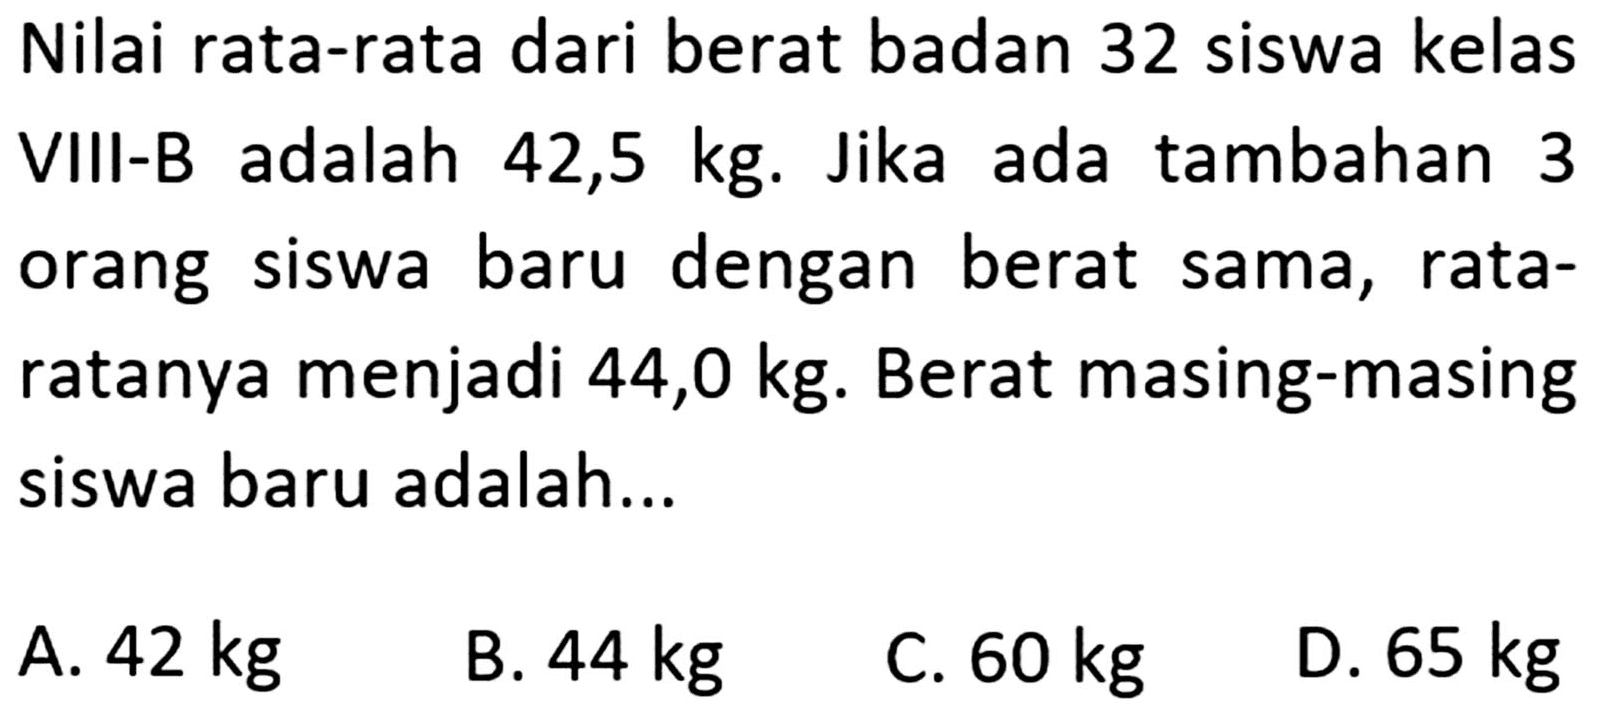 Nilai rata-rata dari berat badan 32 siswa kelas adalah VIII-B 42,5 kg. Jika ada tambahan 3 orang baru dengan siswa berat sama, rata- ratanya menjadi 44,0 kg. Berat masing-masing siswa baru adalah ....